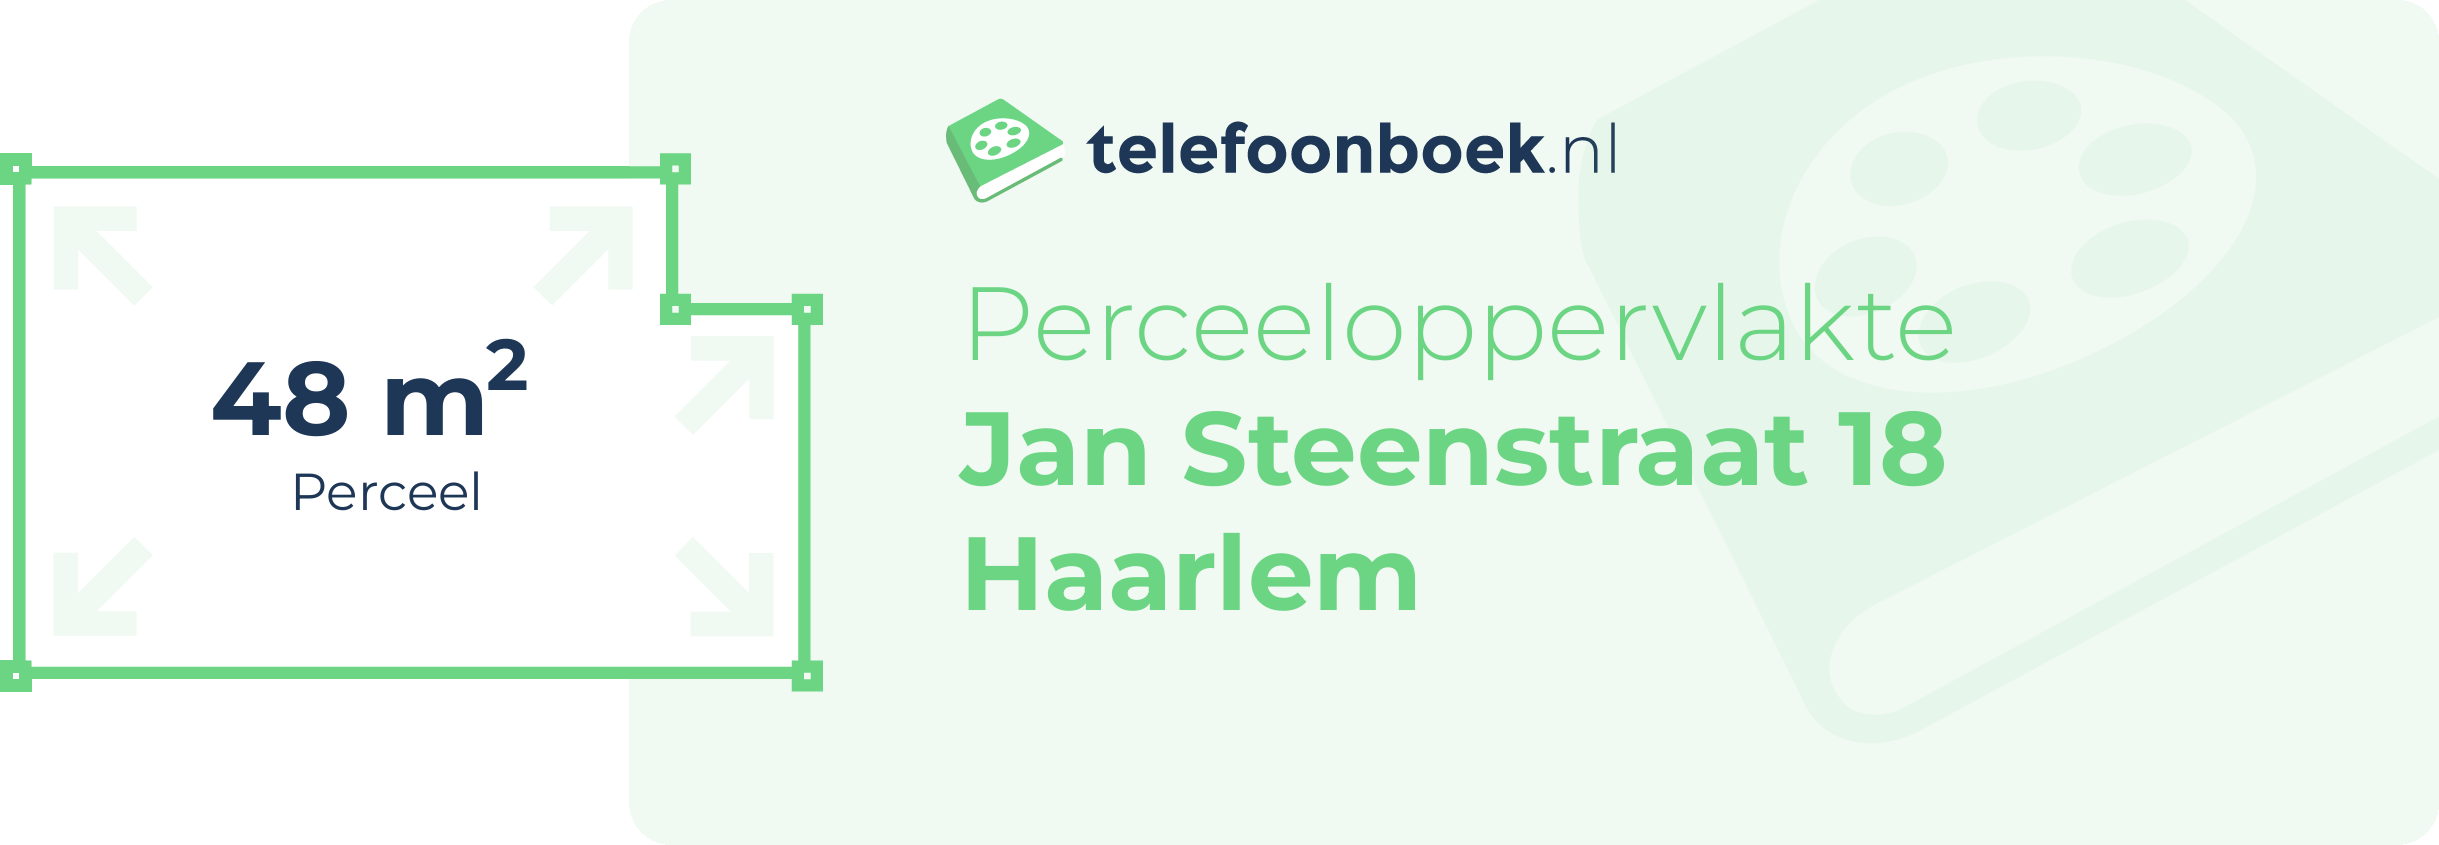 Perceeloppervlakte Jan Steenstraat 18 Haarlem